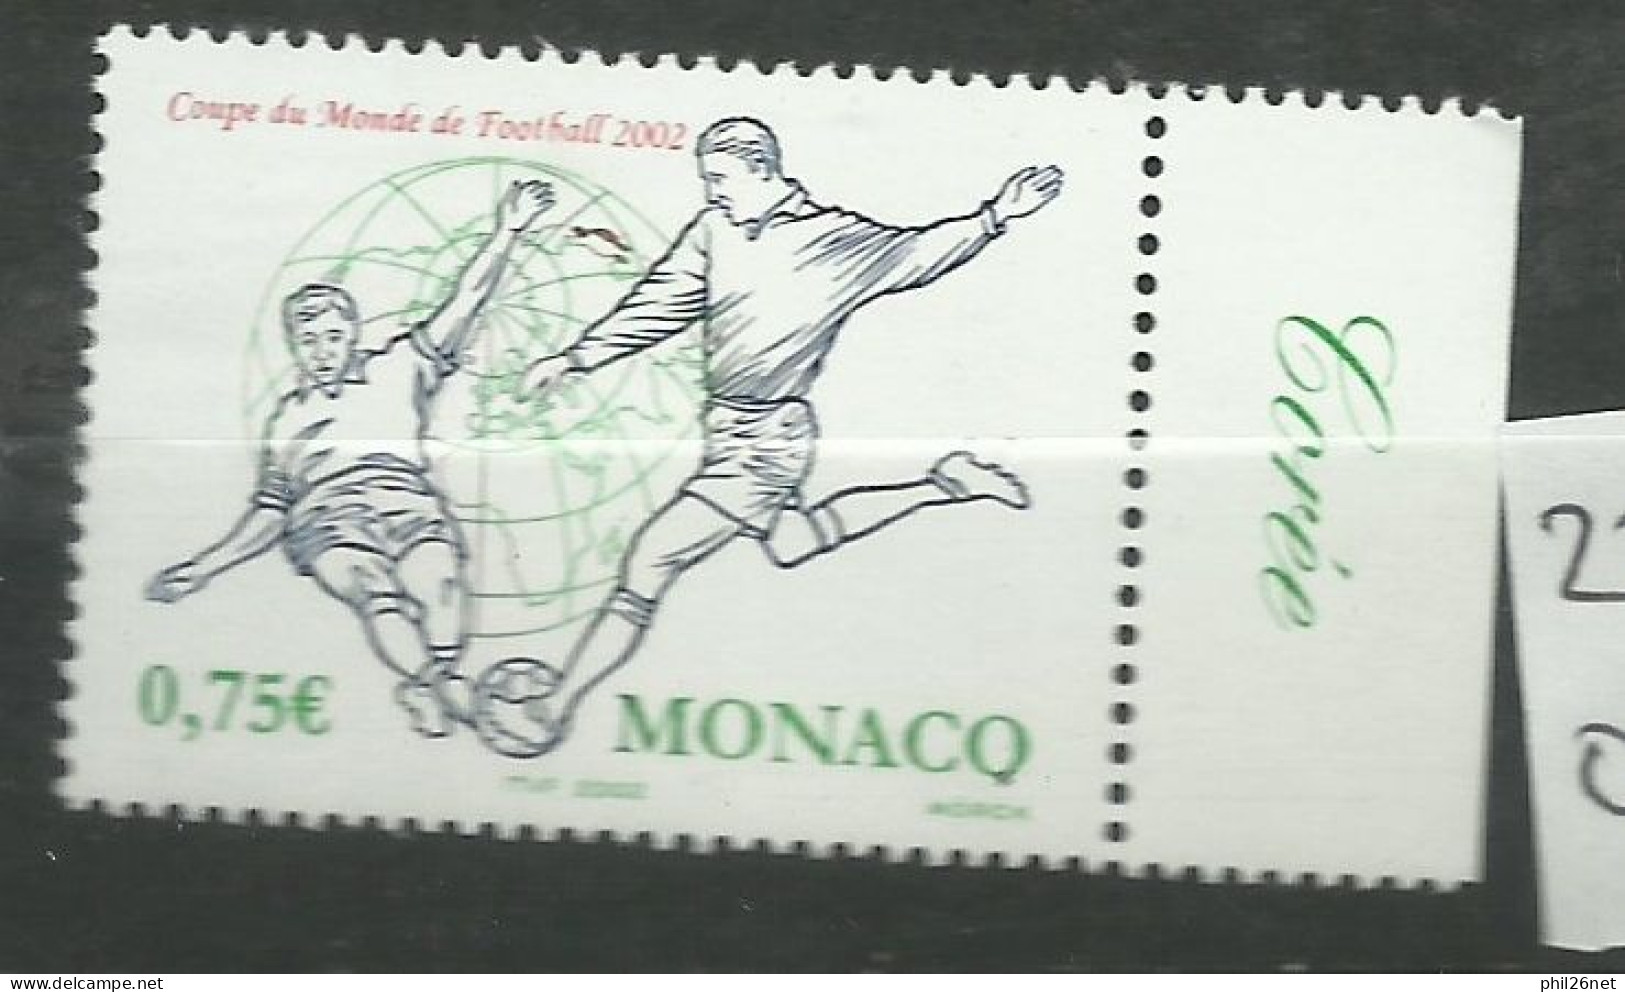 Monaco  N° 2350  Coupe Du Monde Football  2002 Corée Du Sud Et Japon   Neuf  *  *     B/TB   Voir Scans  Soldé ! ! ! - 2002 – Corée Du Sud / Japon